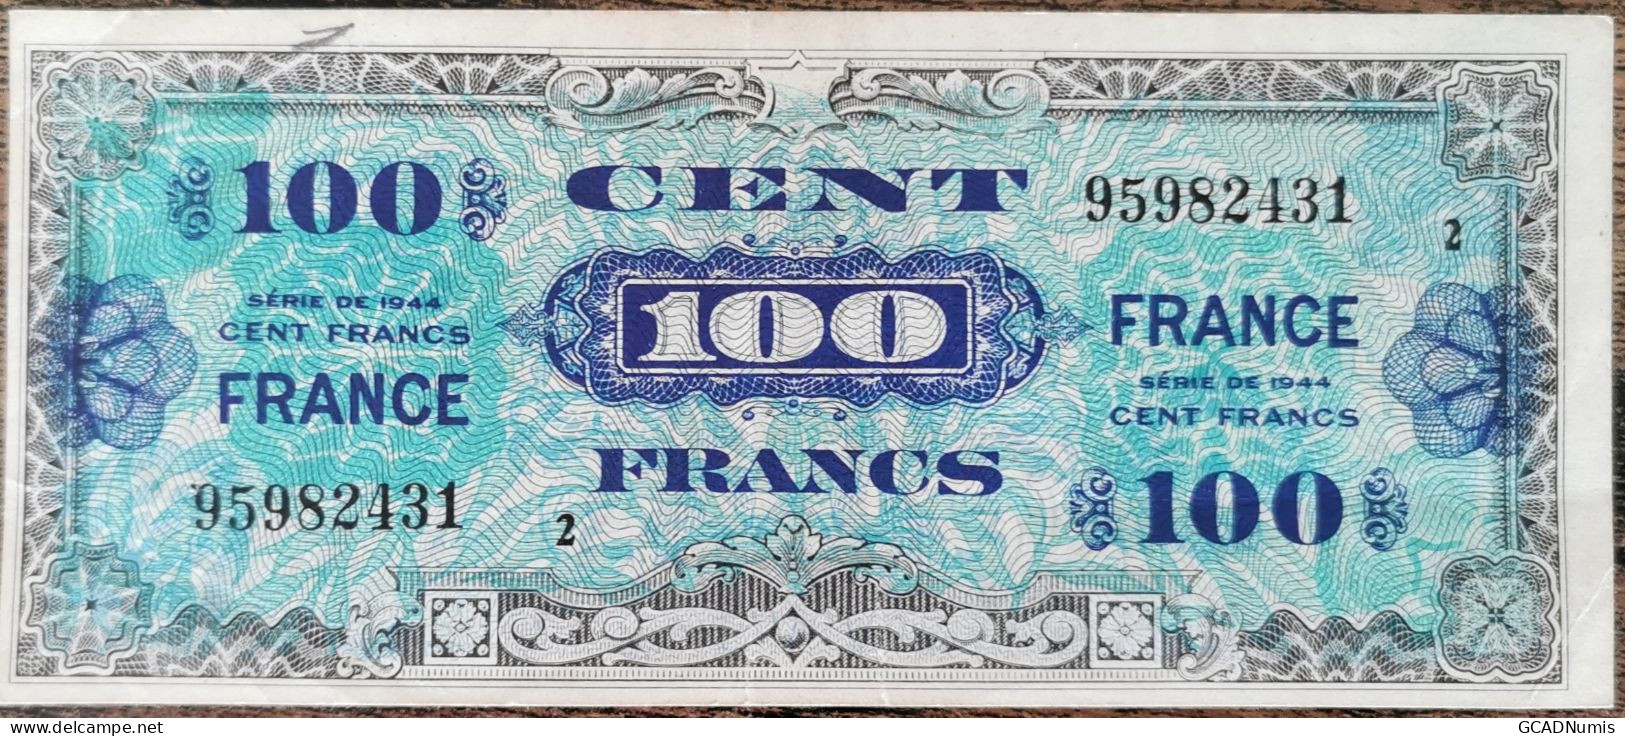 Billet 100 Francs 1944 FRANCE Préparer Par Les USA Pour La Libération Série 2 - 1944 Flag/France